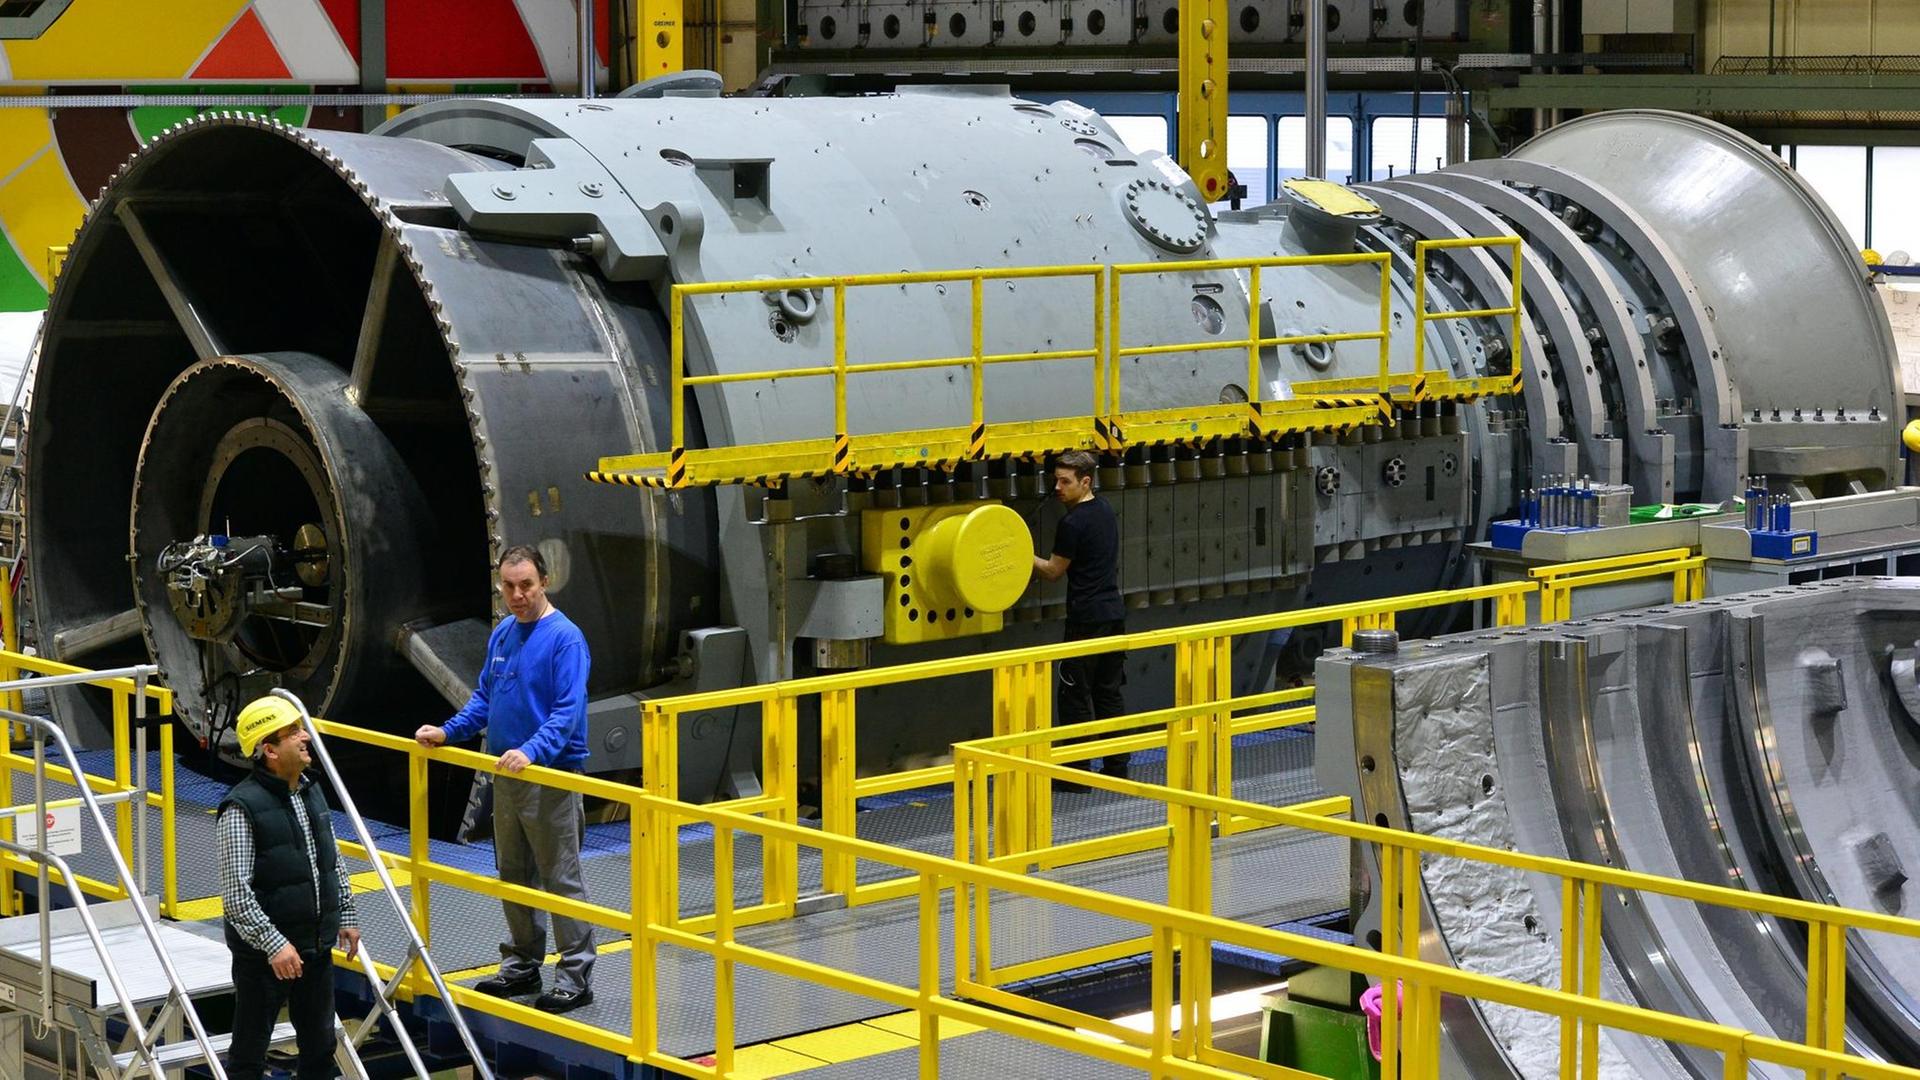 Siemens-Mitarbeiter arbeiten am 02.03.2017 in Berlin im Siemens-Gasturbinenwerk an einer Gasturbine.